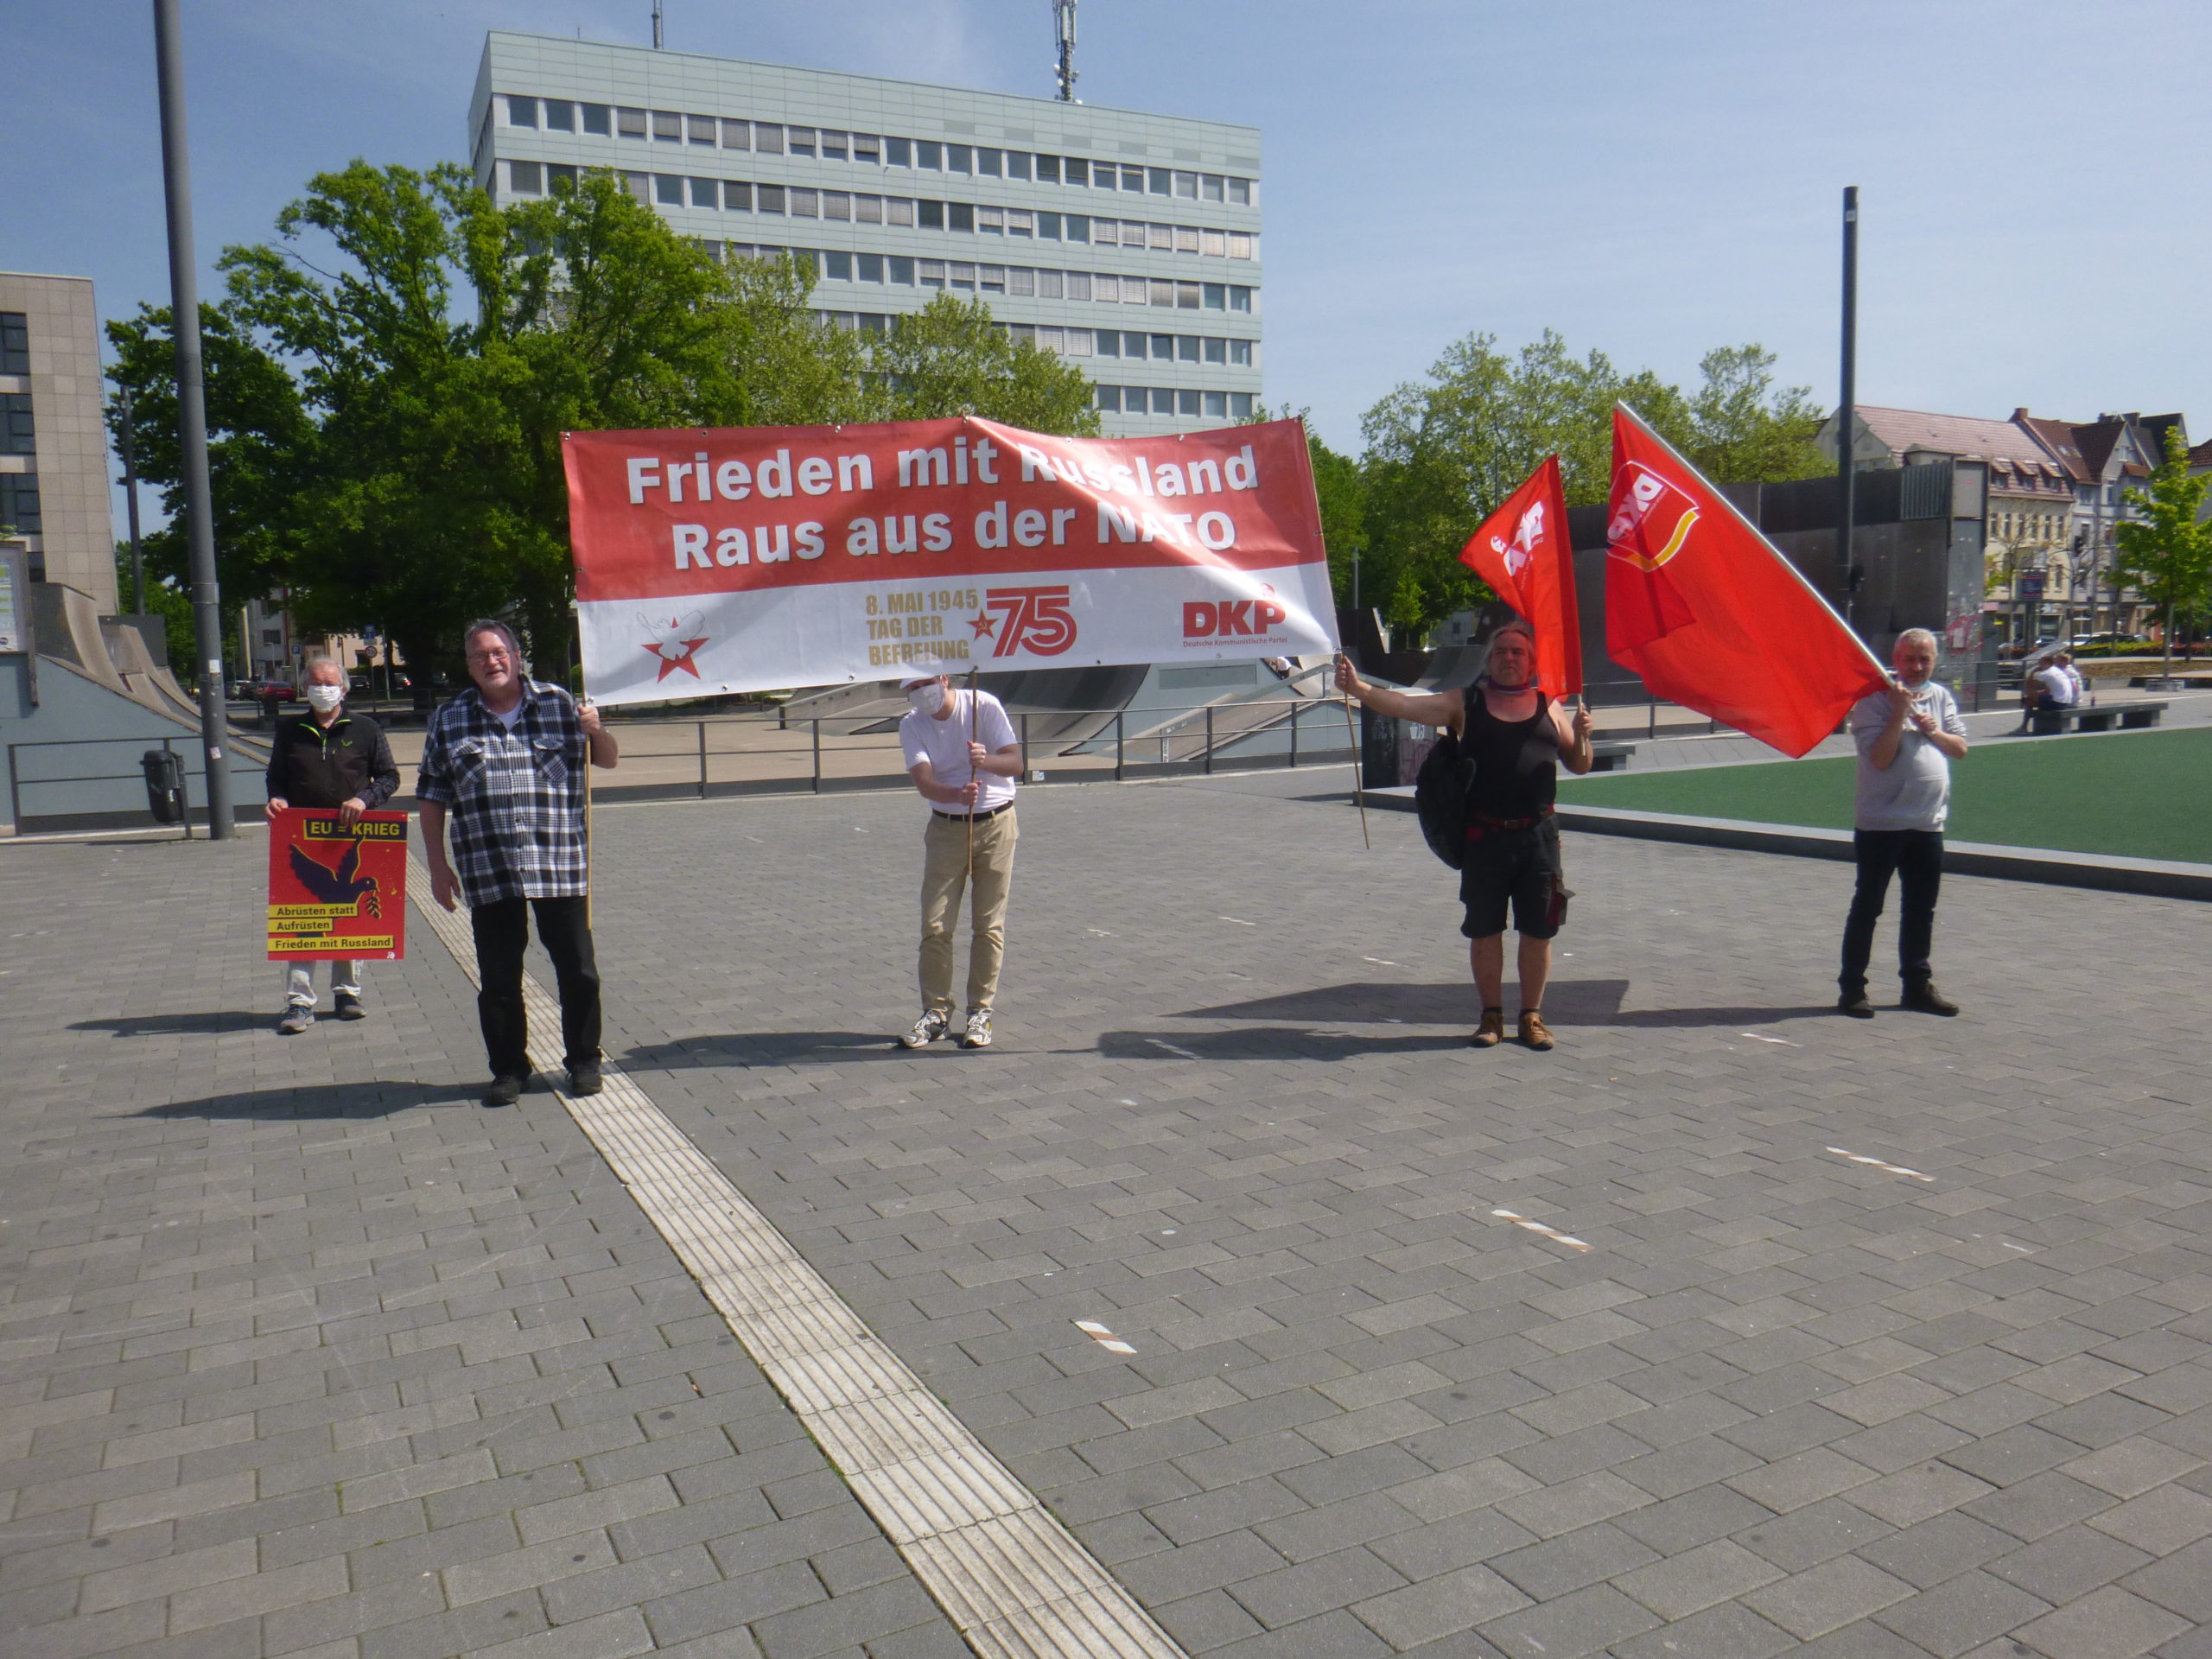 Bielefeld 2 scaled - Friedensbotschaft - Antifaschismus, Tag der Befreiung - Im Bild